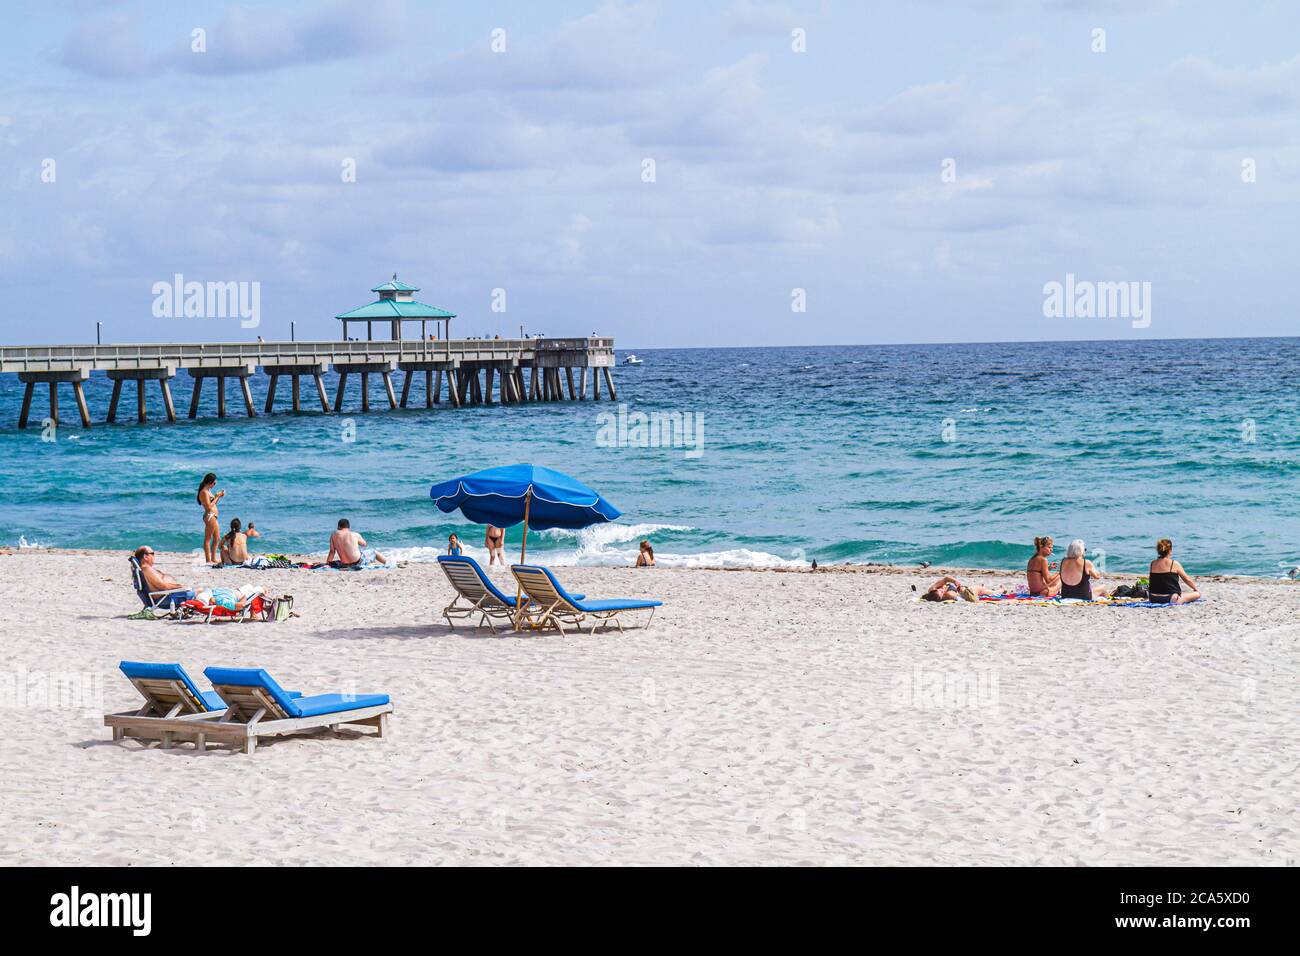 Deerfield Beach Florida, sabbia, pubblico, costa dell'Oceano Atlantico, riva, surf, solarium, molo di pesca internazionale di Deerfield Beach, viaggi per i visitatori Foto Stock